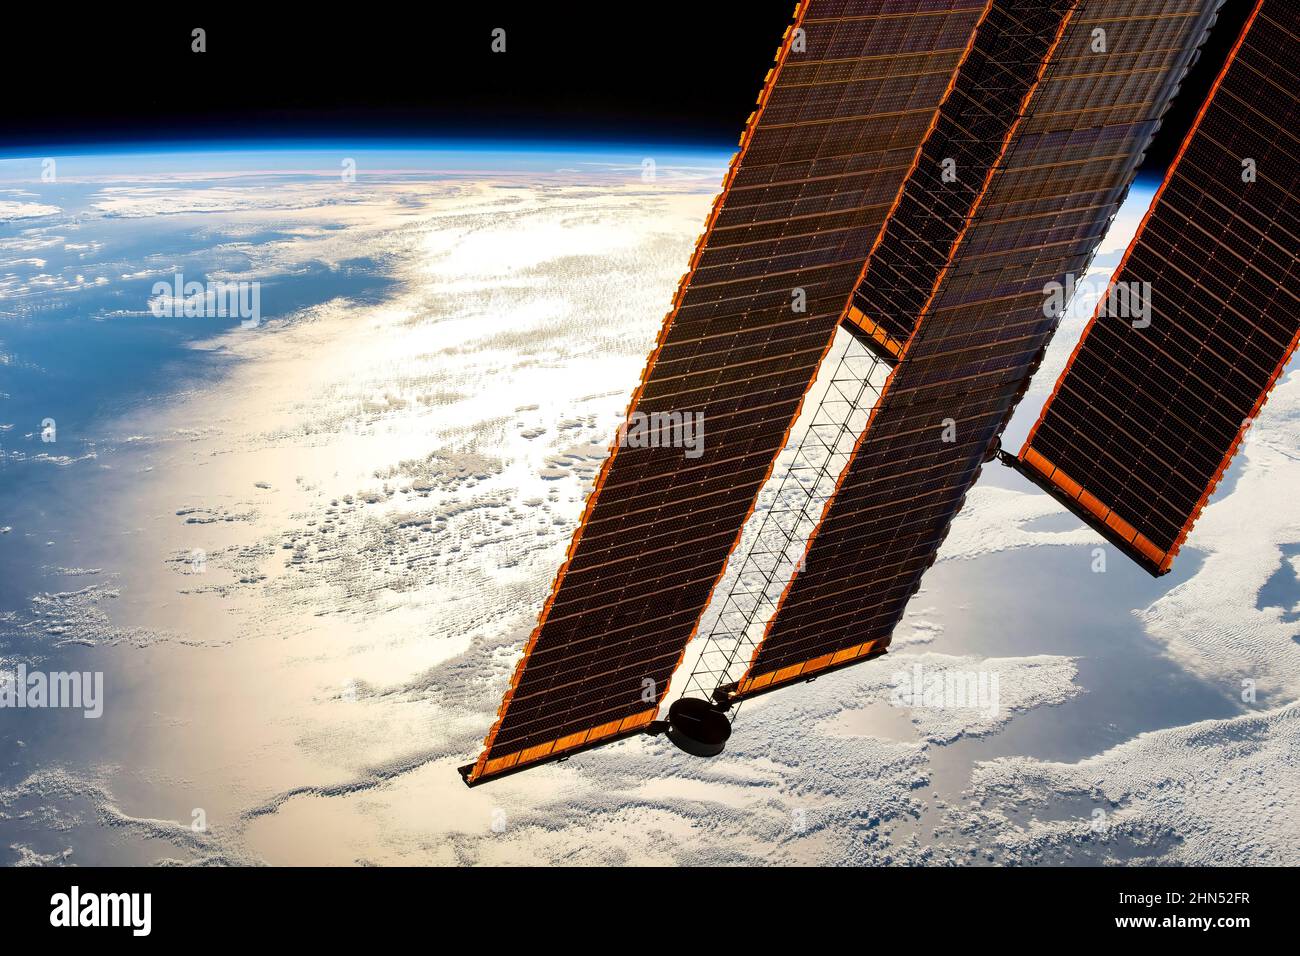 Programmi spaziali ed esplorazione. Per indicazioni sull'utilizzo della NASA: https://www.nasa.gov/multimedia/guidelines/index.html Foto Stock